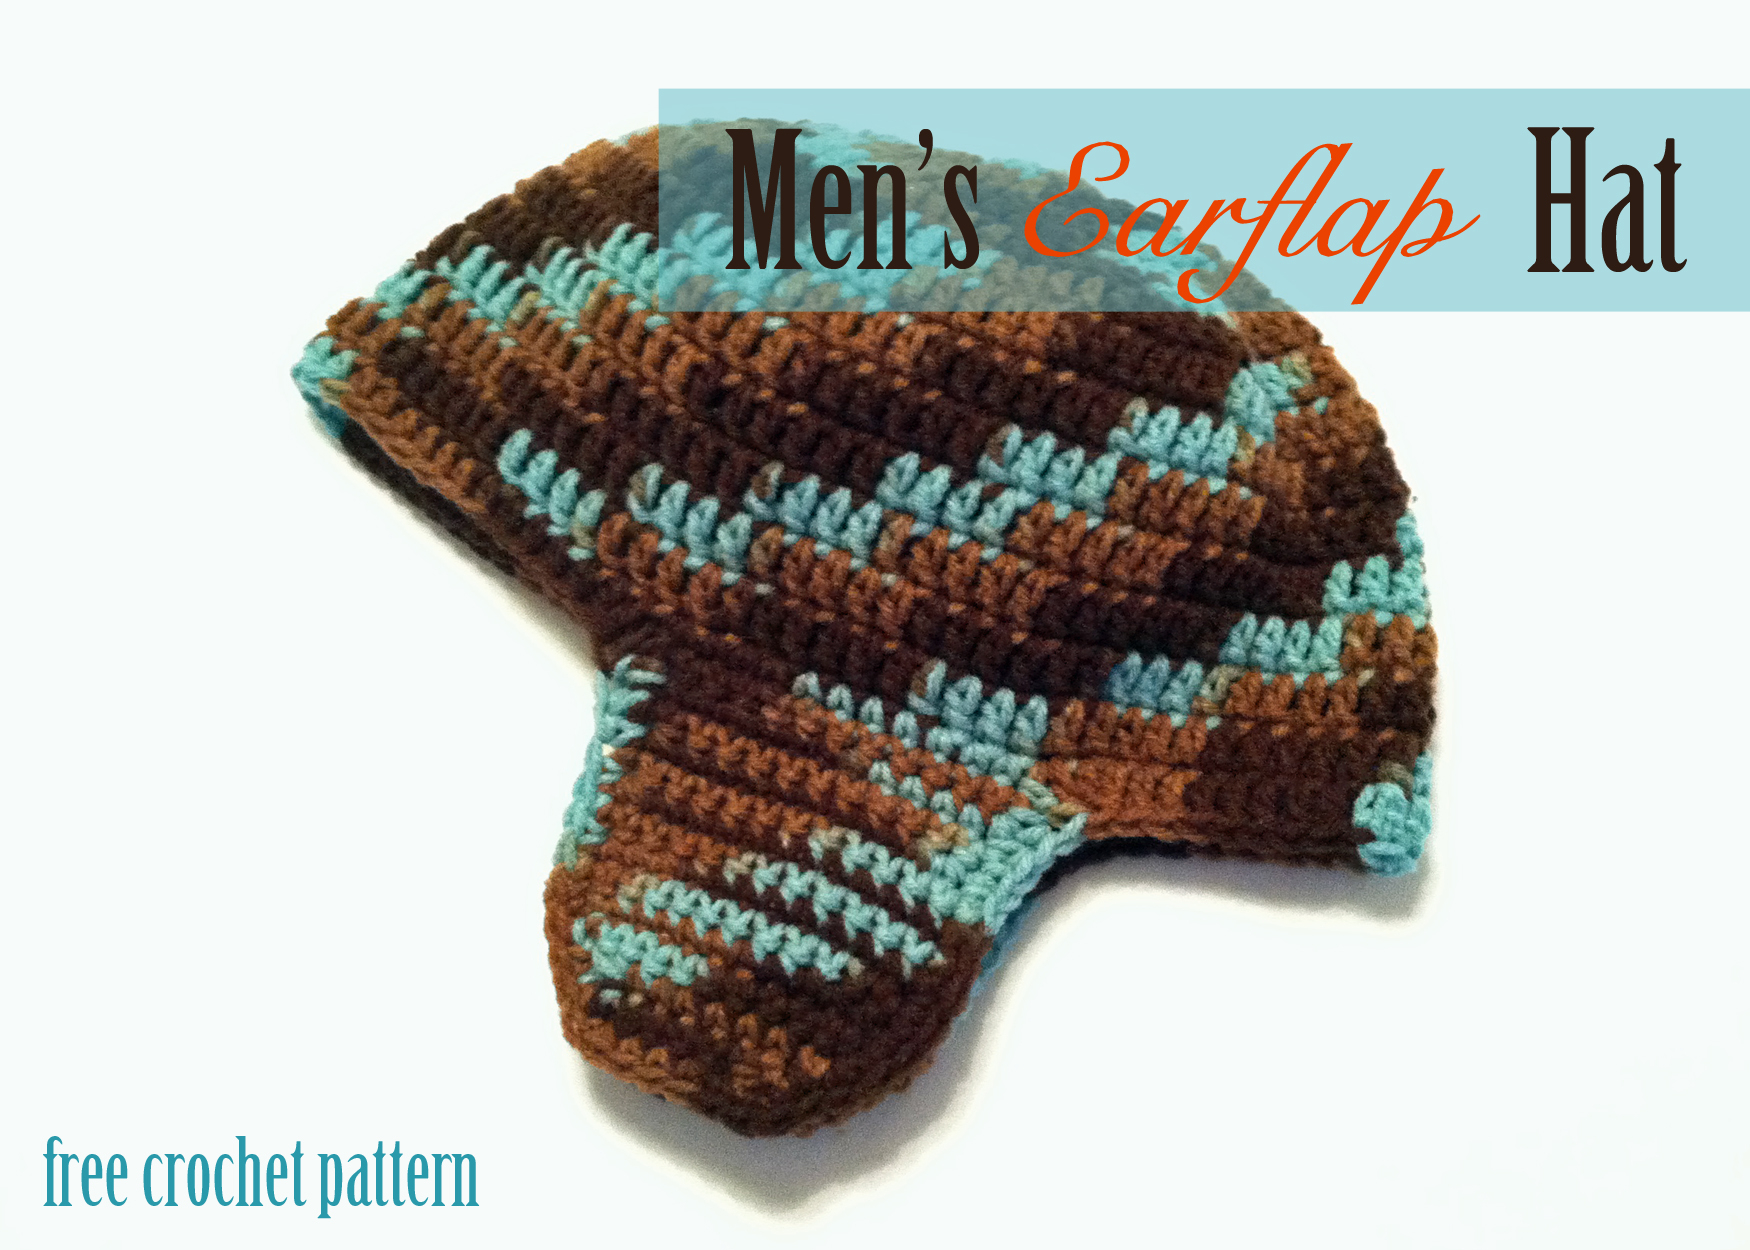 Crochet Hat Patterns For Men Free Crochet Pattern Mens Earflap Hat